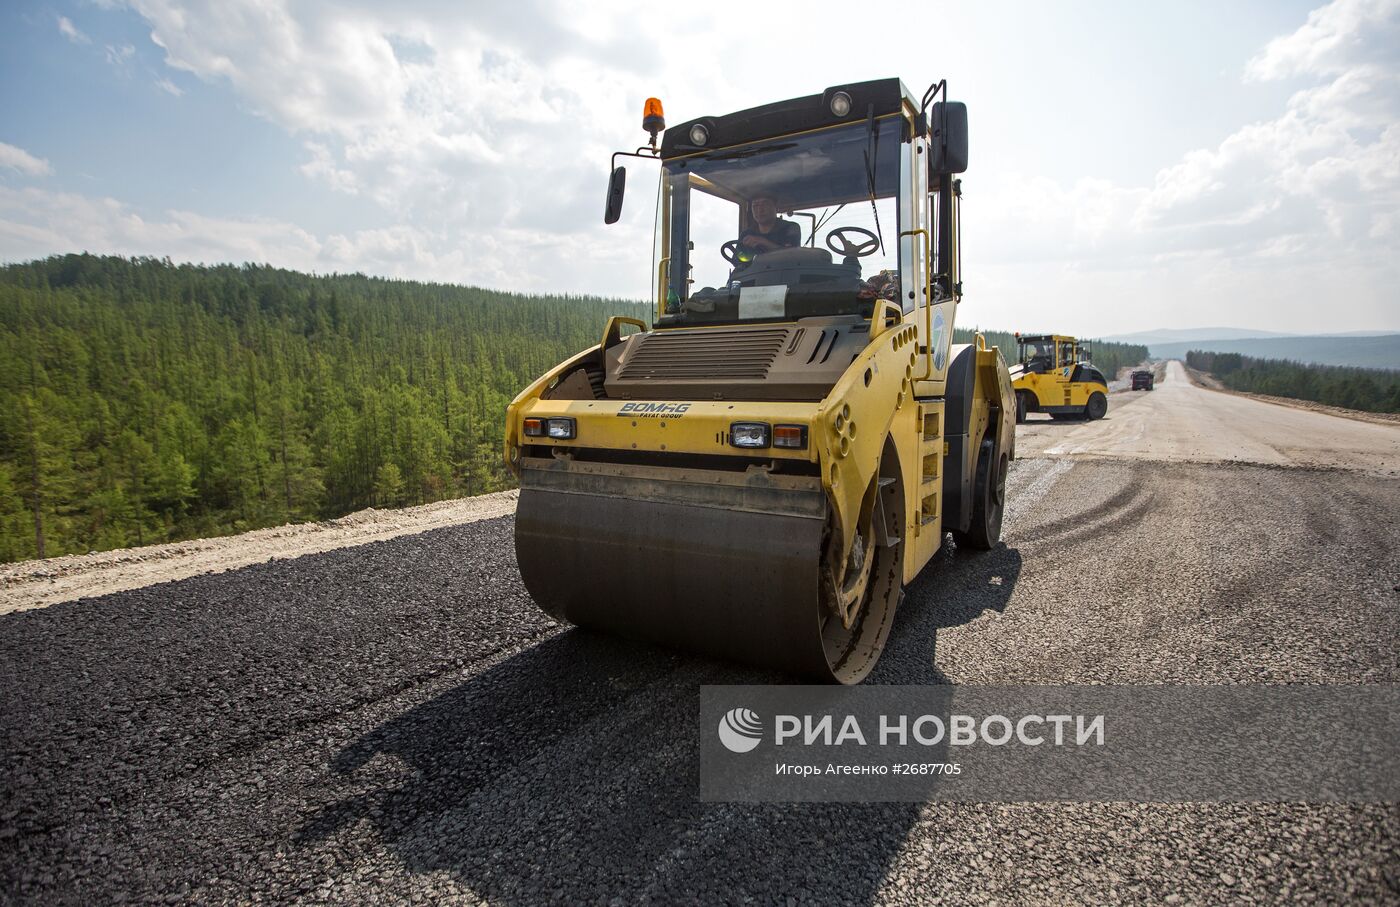 Реконструкция федеральной трассы "Лена" в Приамурье